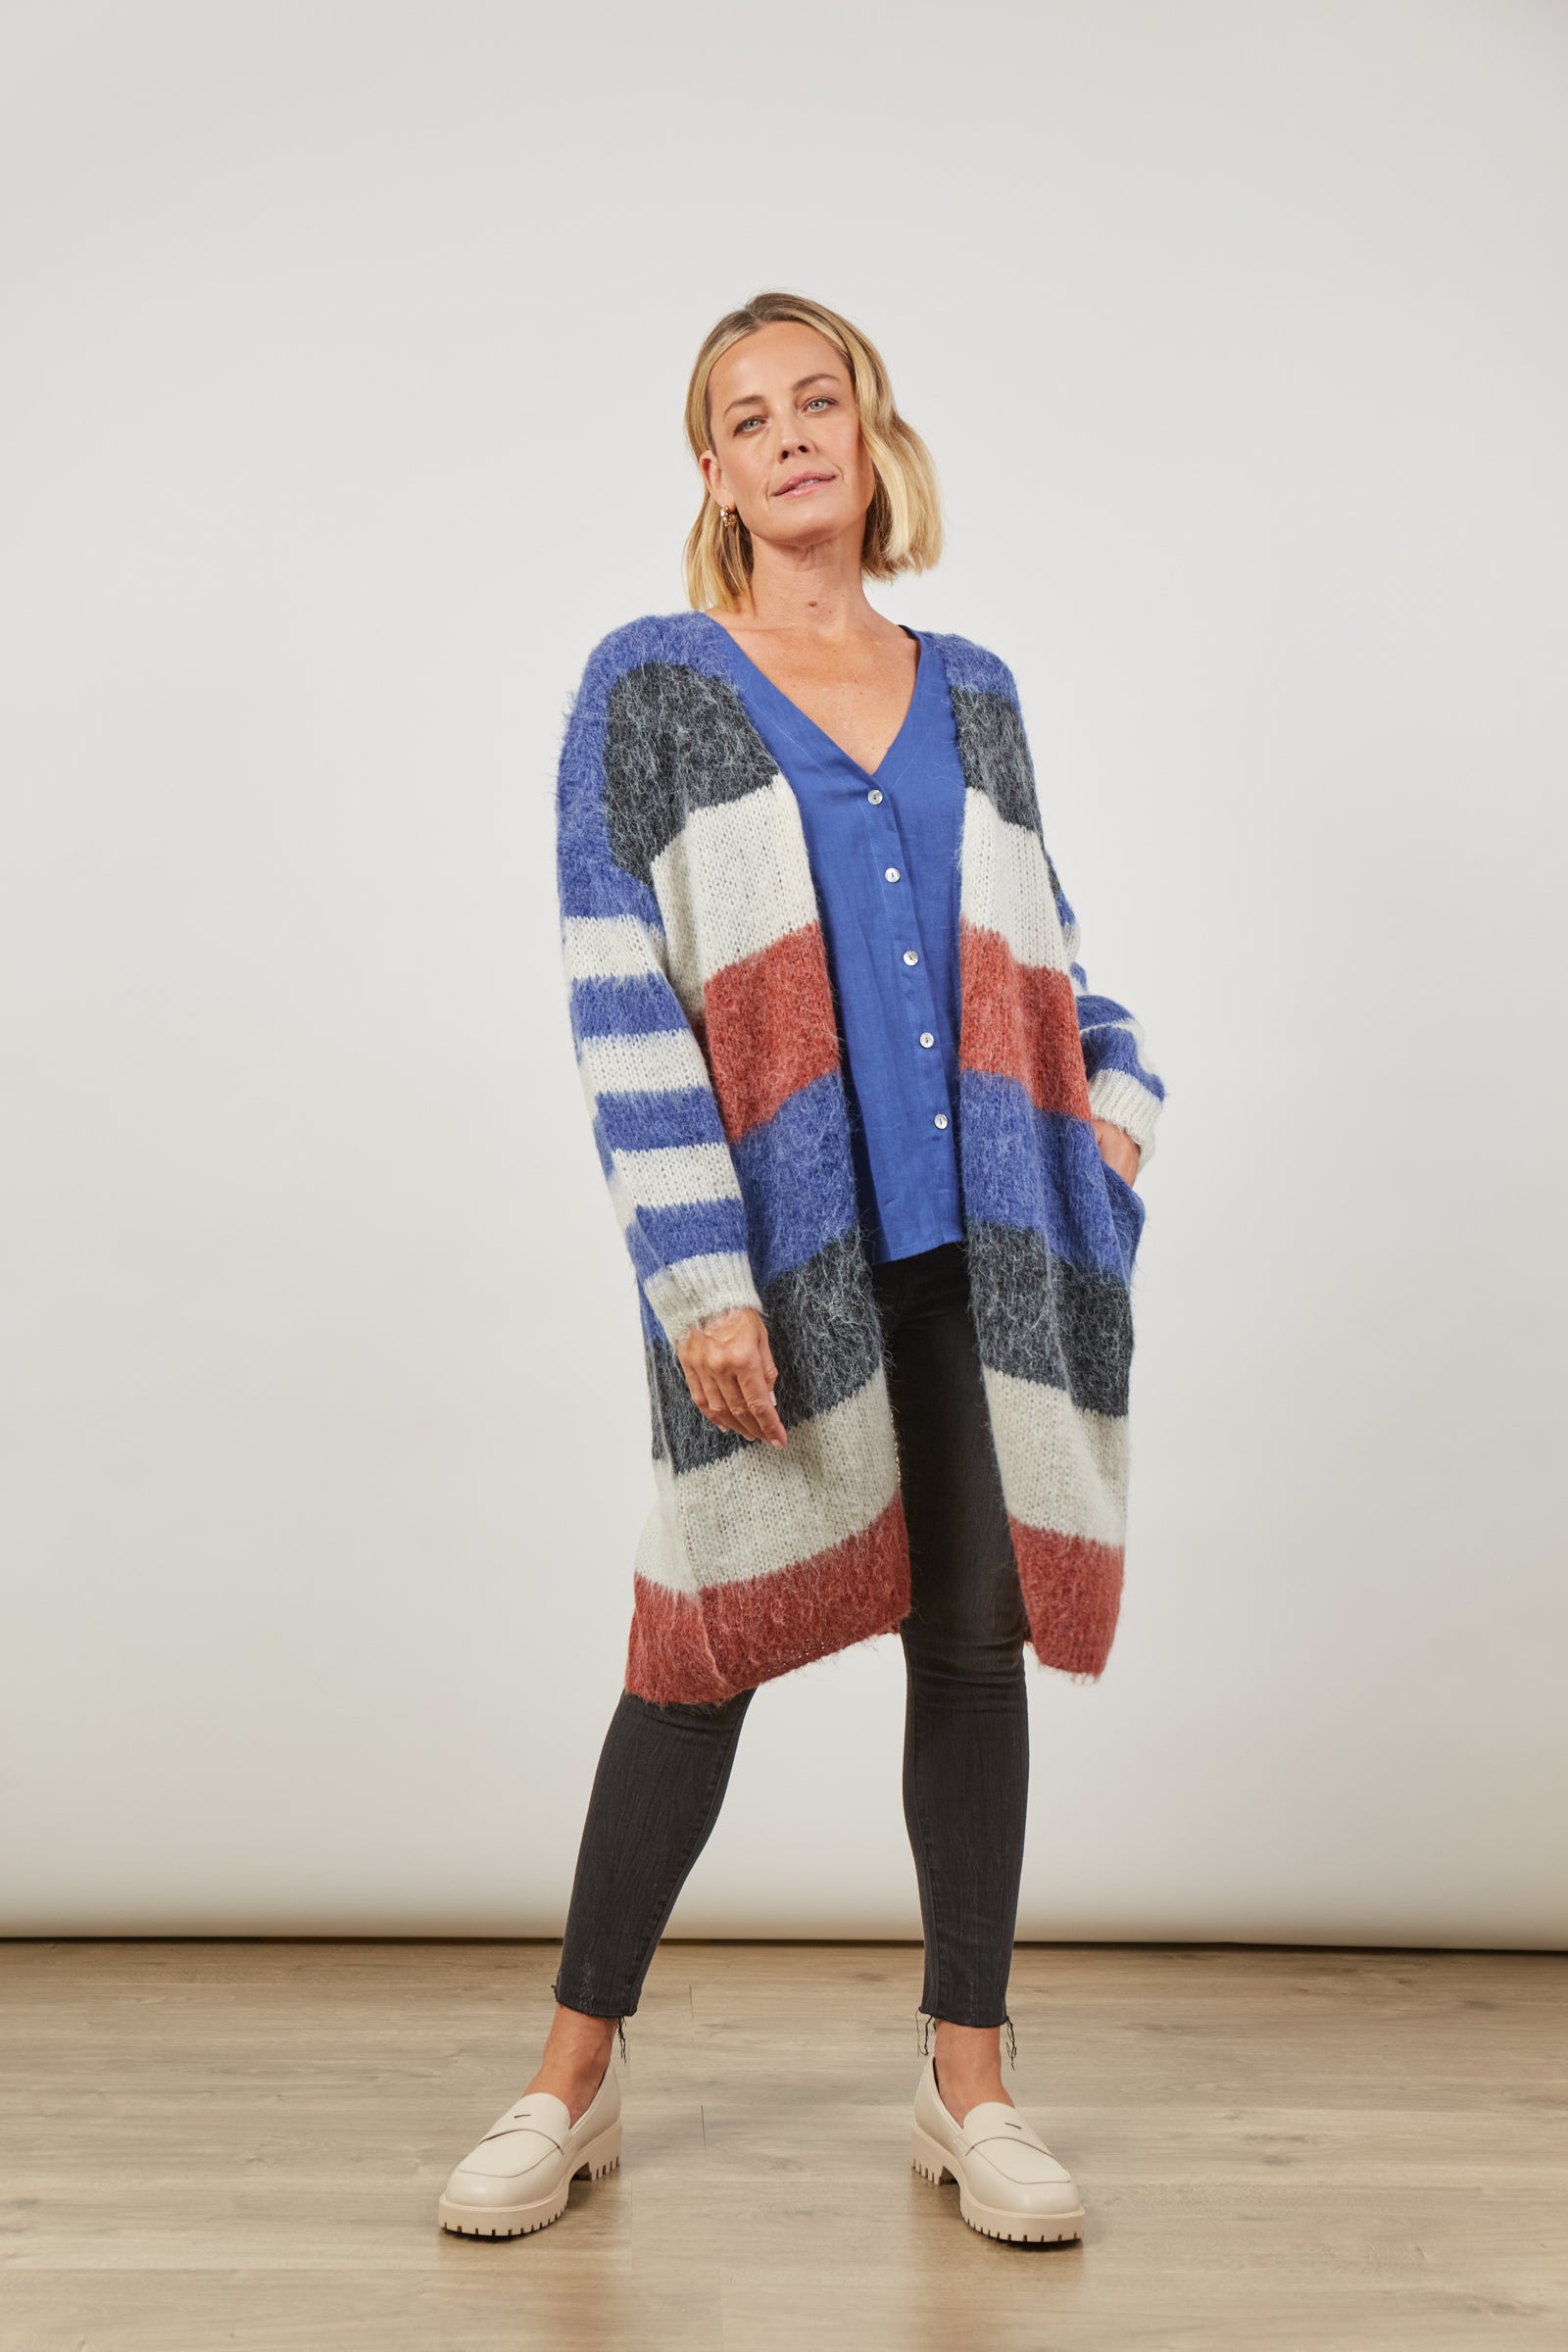 Serene Stripe Cardigan - Azure Stripe - Isle of Mine Clothing - Knit Cardigan Long One Size